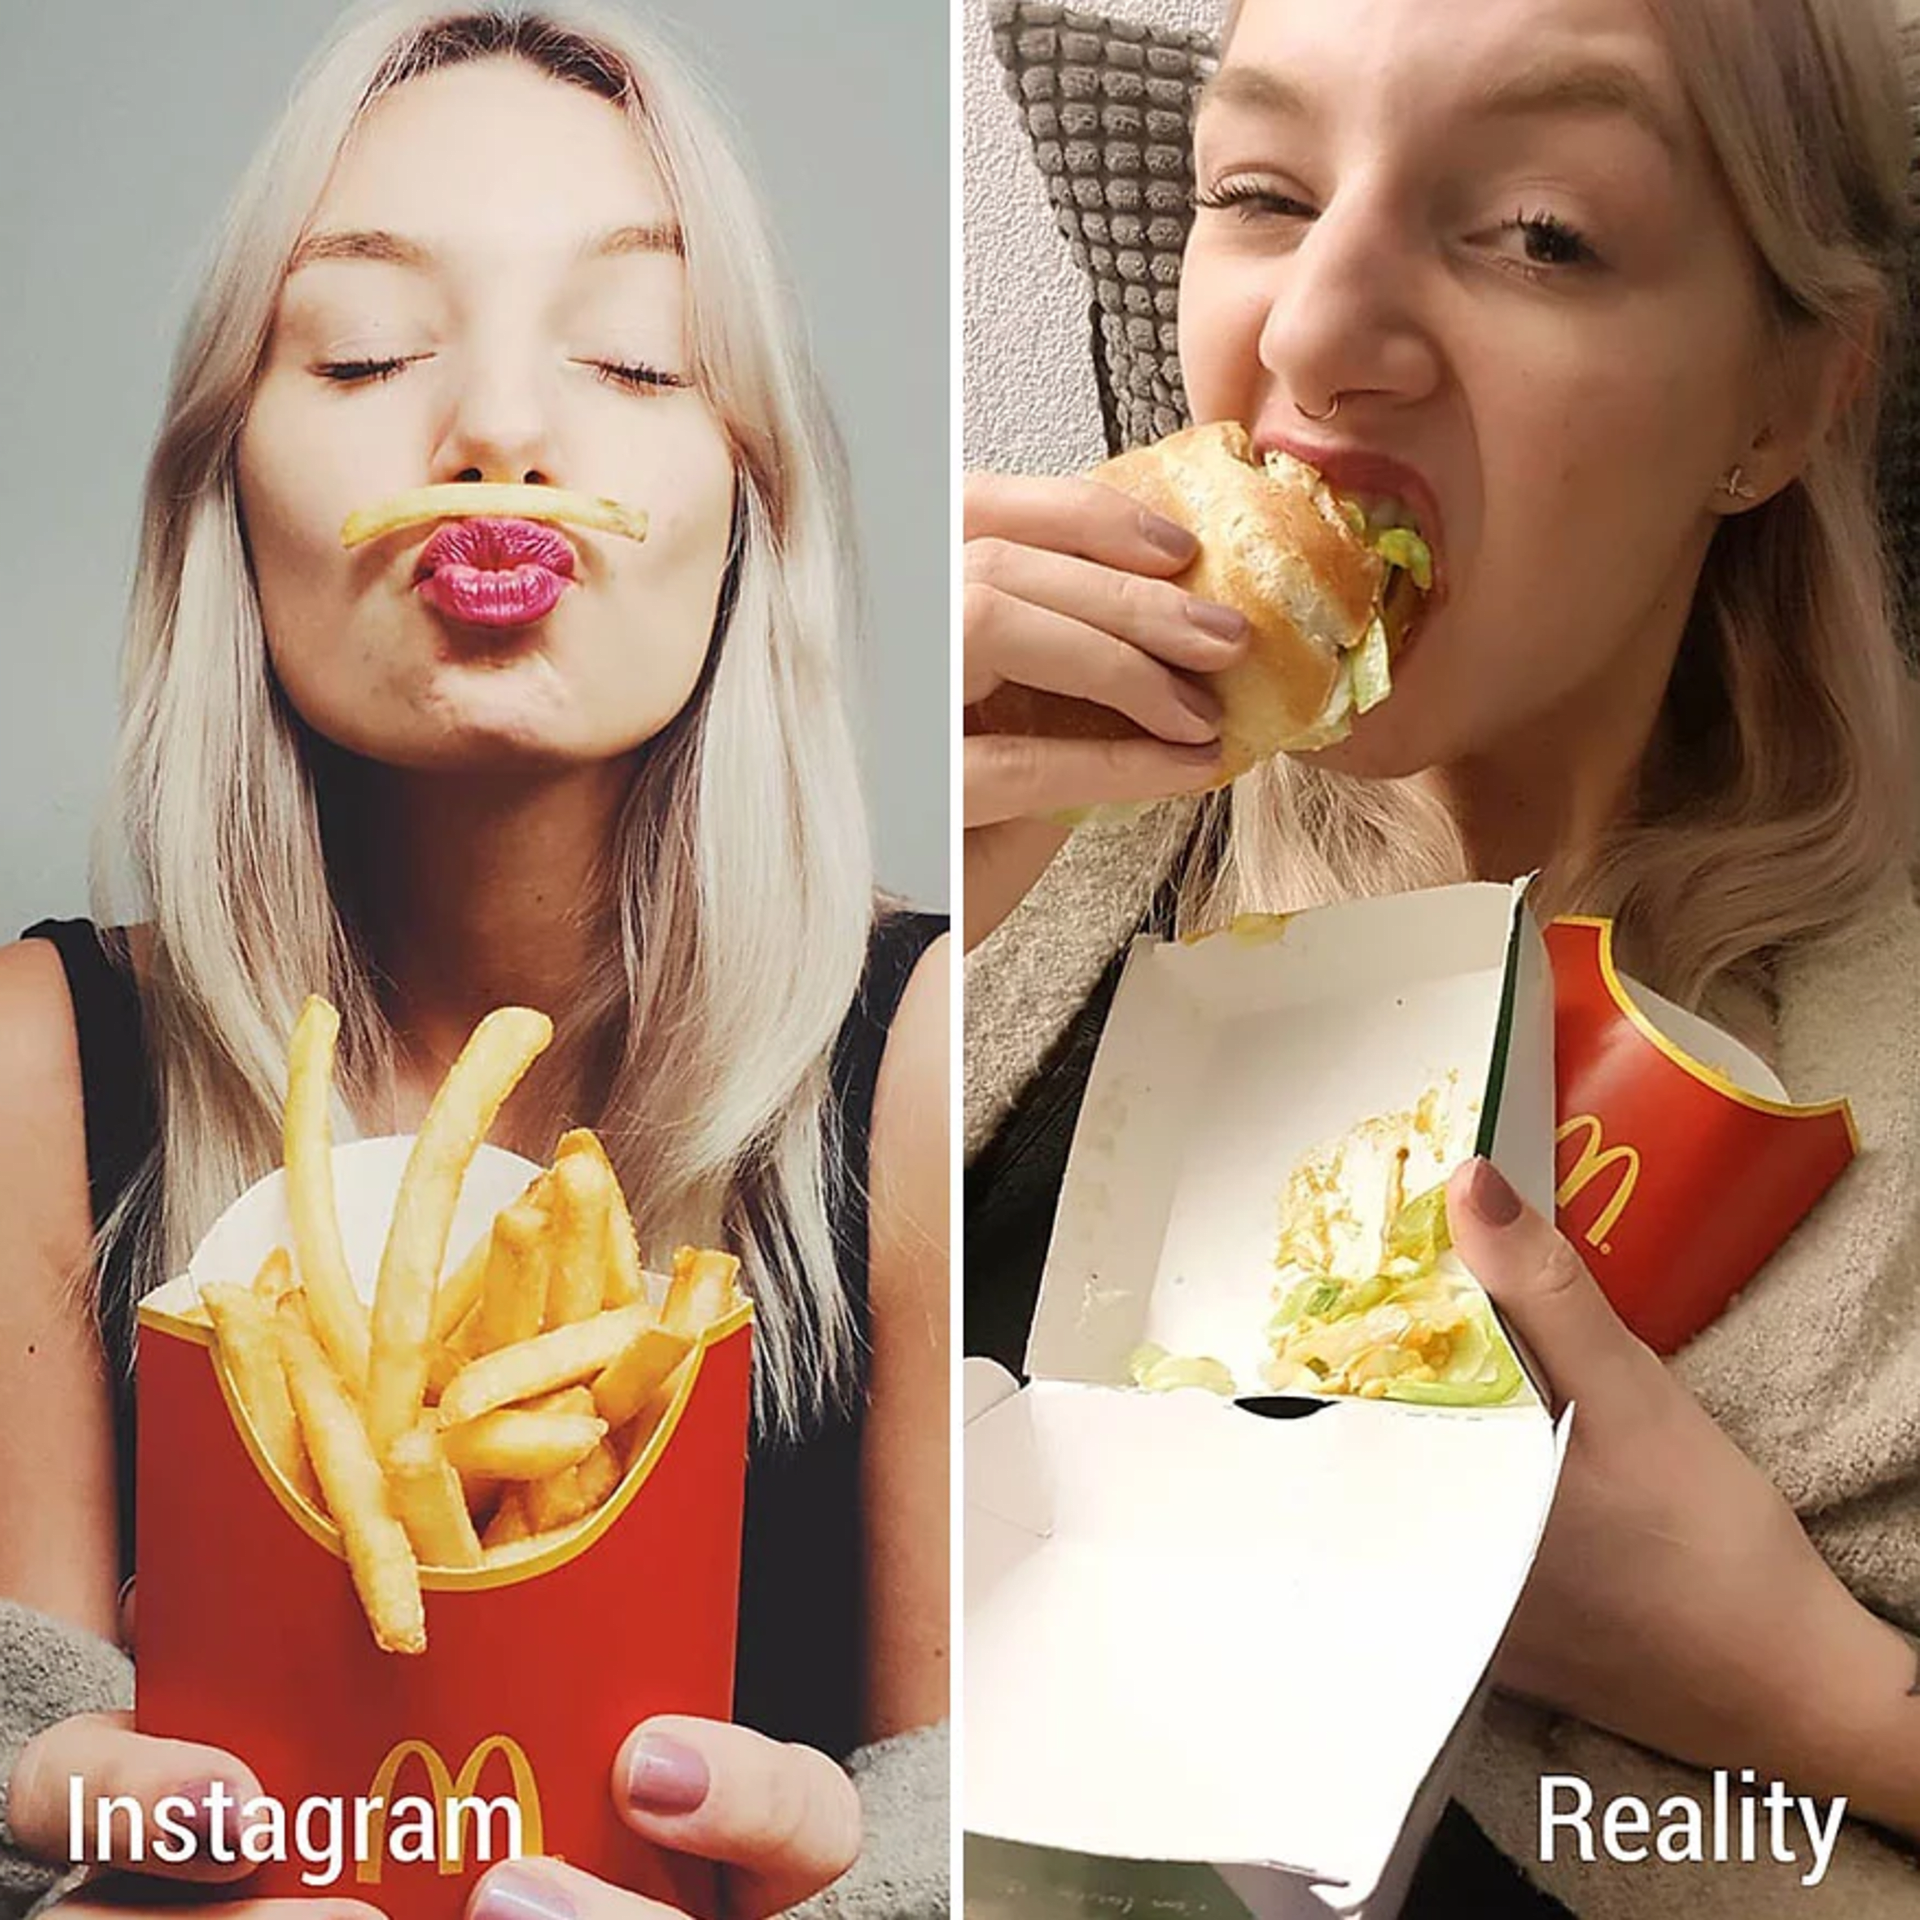 Žena ukazuje rozdíl mezi fotkami na Instagramu a realitou 17